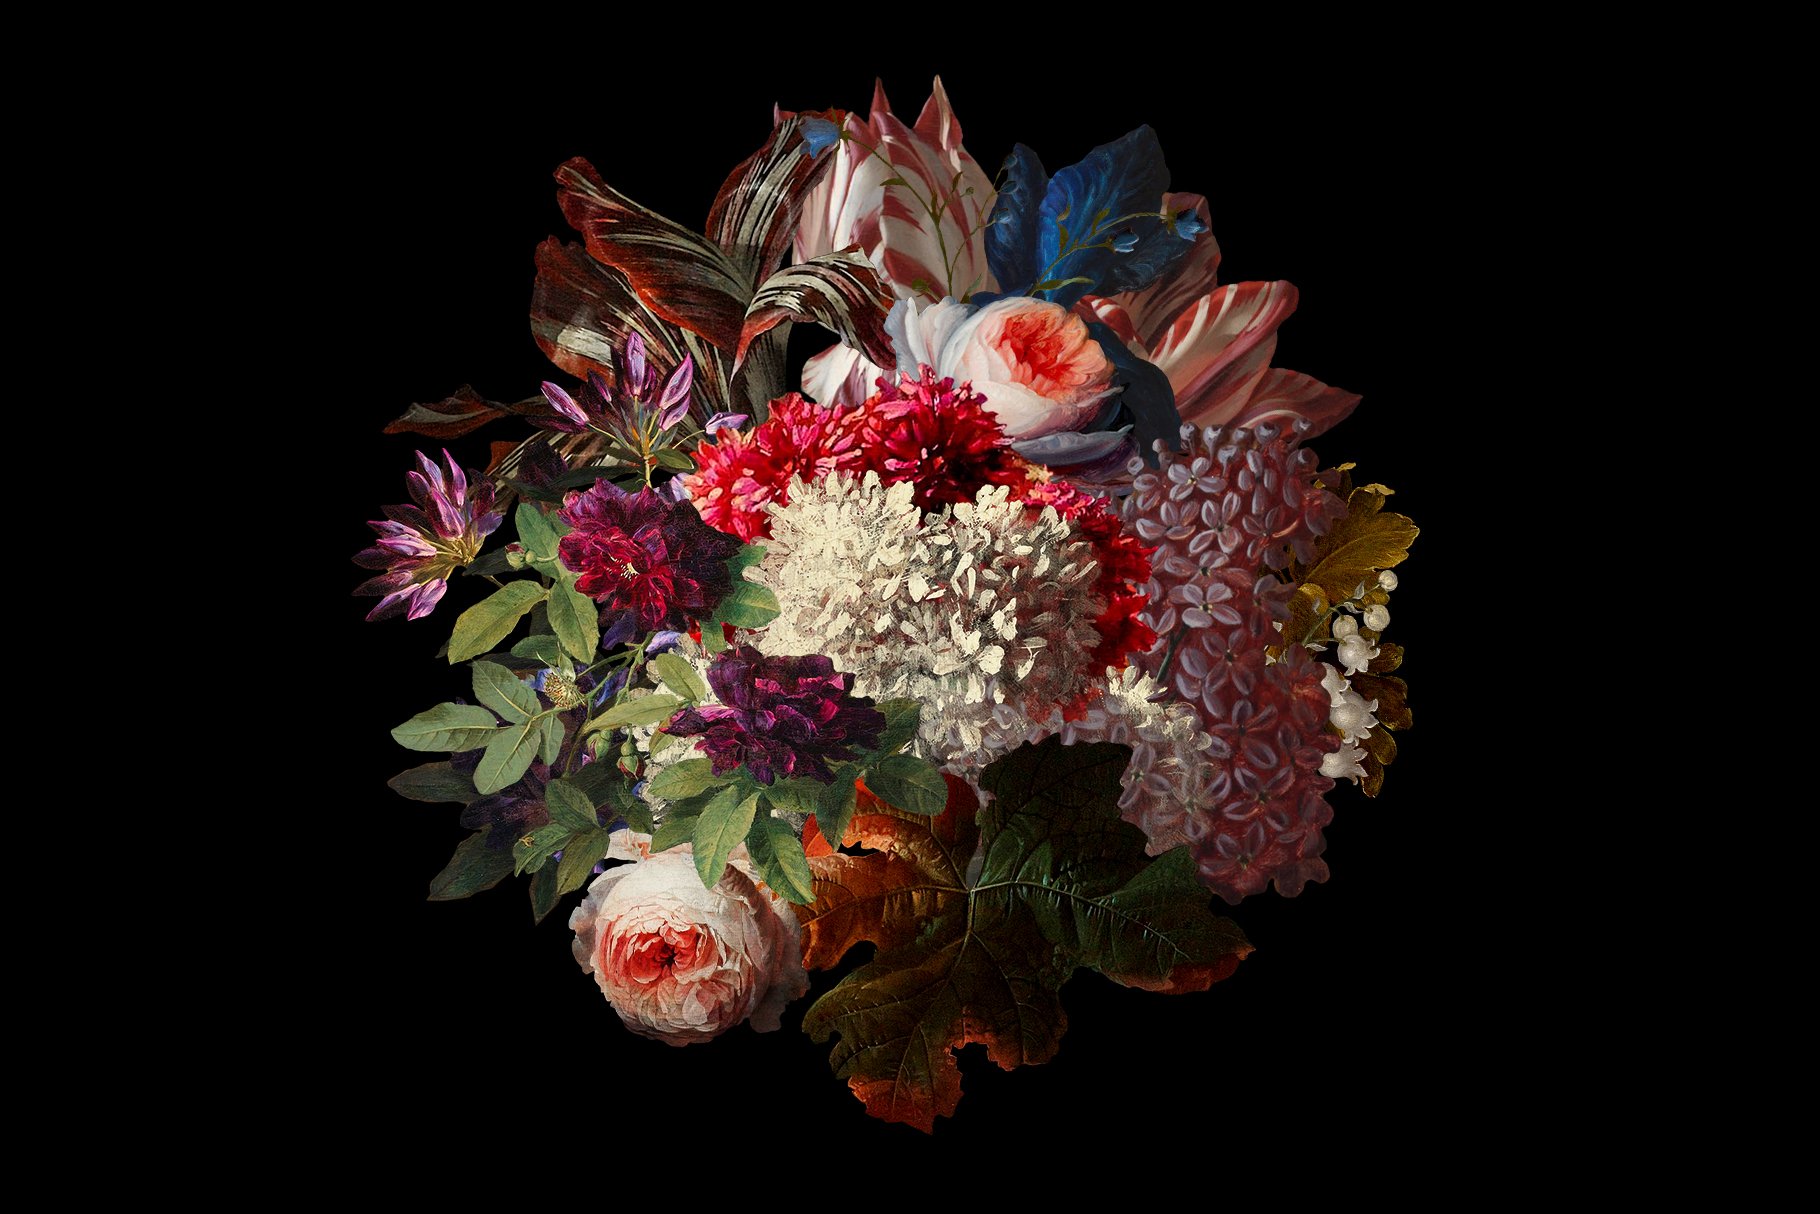 100多种复古花卉古典艺术品图像集合 Kurohana – Moody Florals Collection 图片素材 第5张